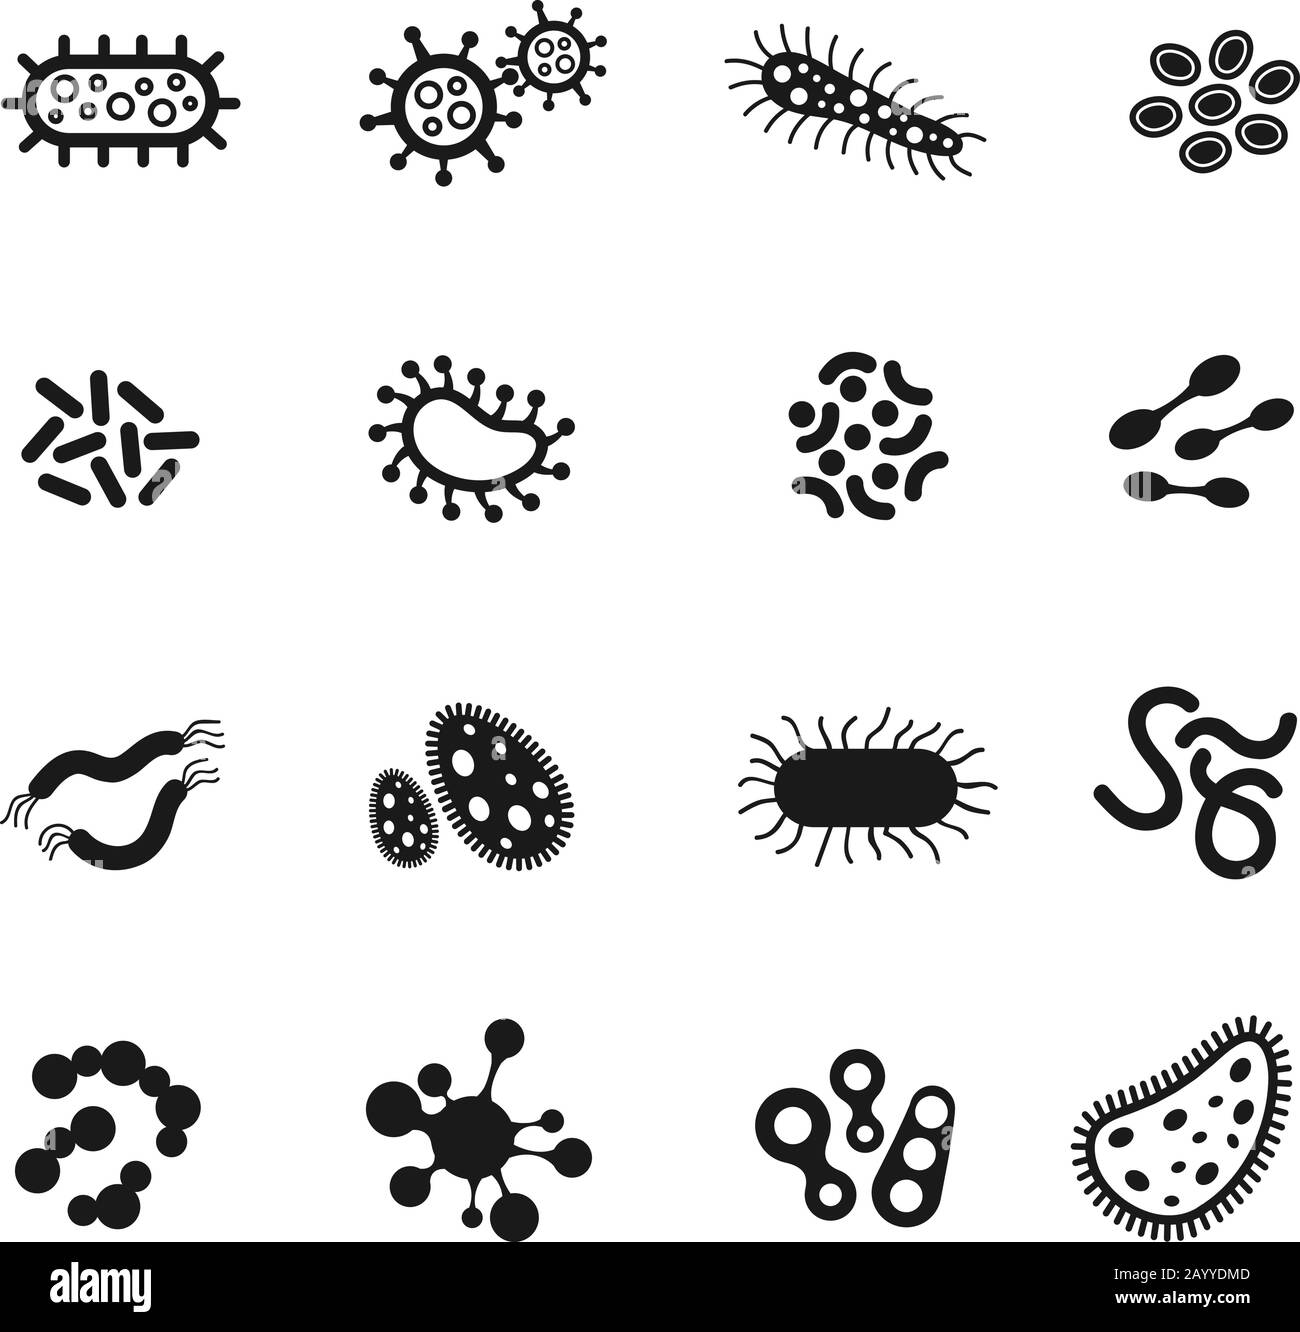 Bakterien, Mikroben, Superbug, Virus-Vektor-Symbole. Bakterienmedizin und Wissenschaftsbiologie Virusinfektion, mikroskopische Bakterien setzen Veranschaulichung Stock Vektor